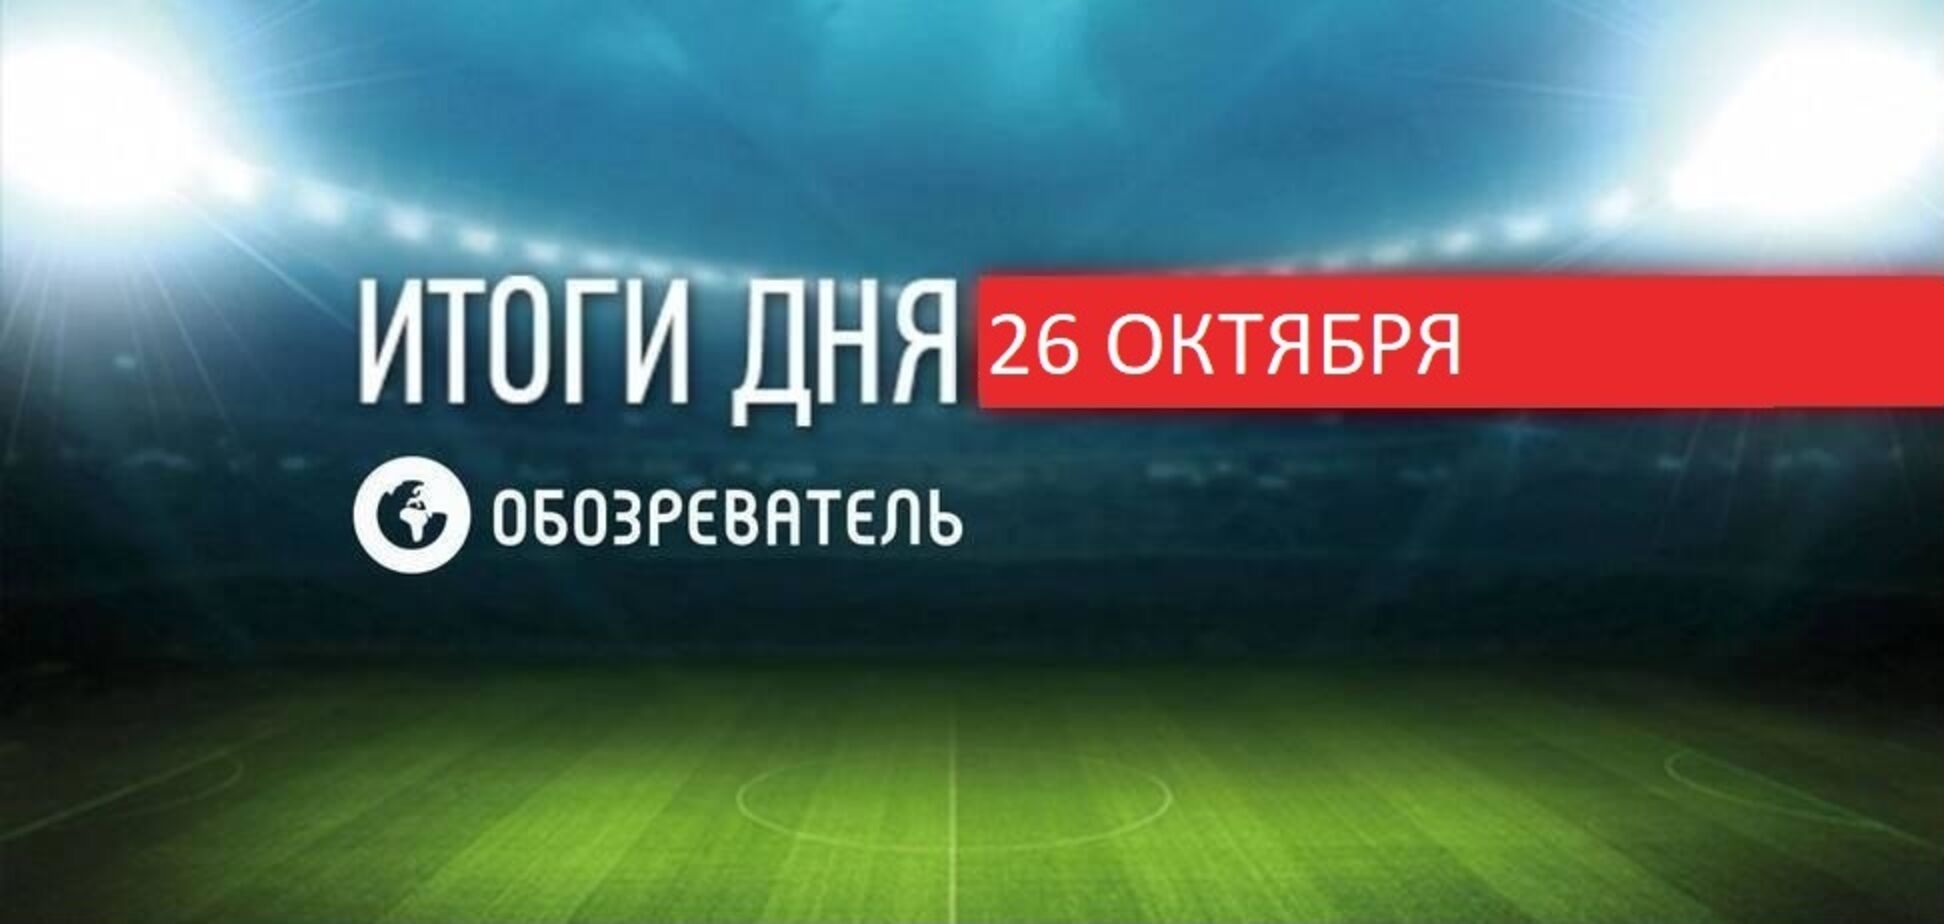 Український футболіст забив три голи за 10 хвилин: спортивні підсумки 26 жовтня